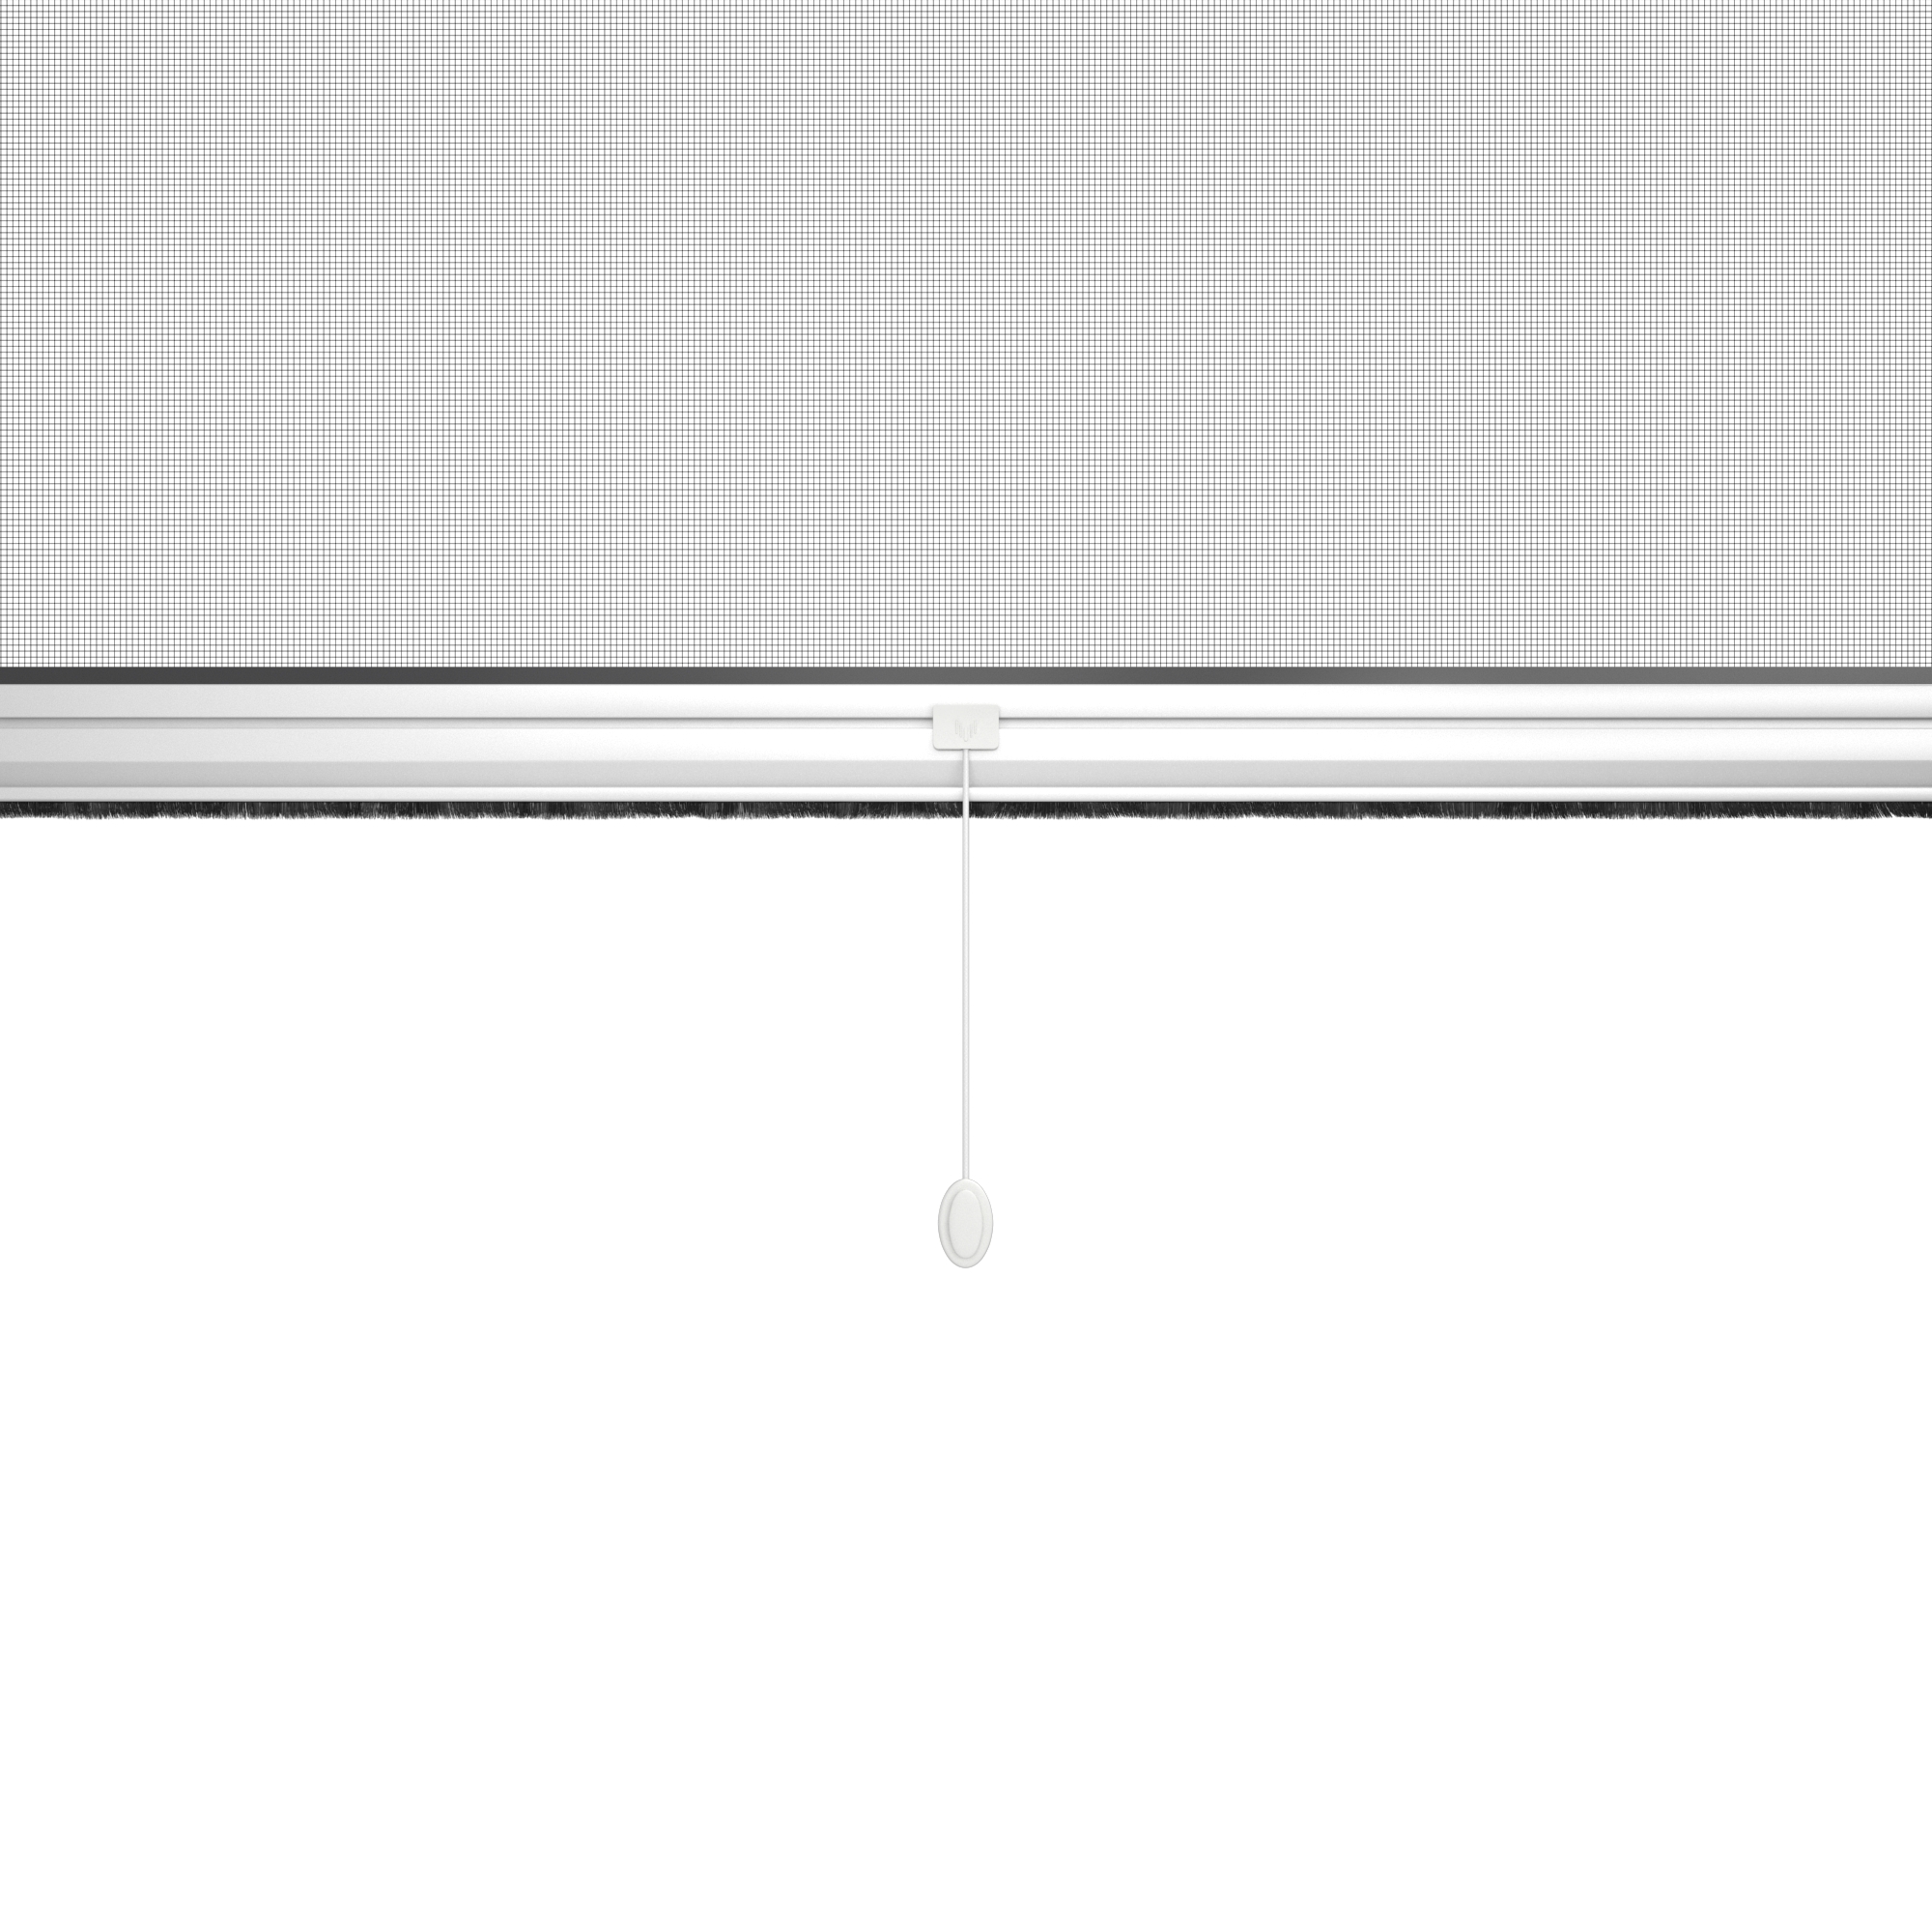 Zanzariera avvolgibile ARTENS per finestra L 100 x H 160 cm bianco - 4